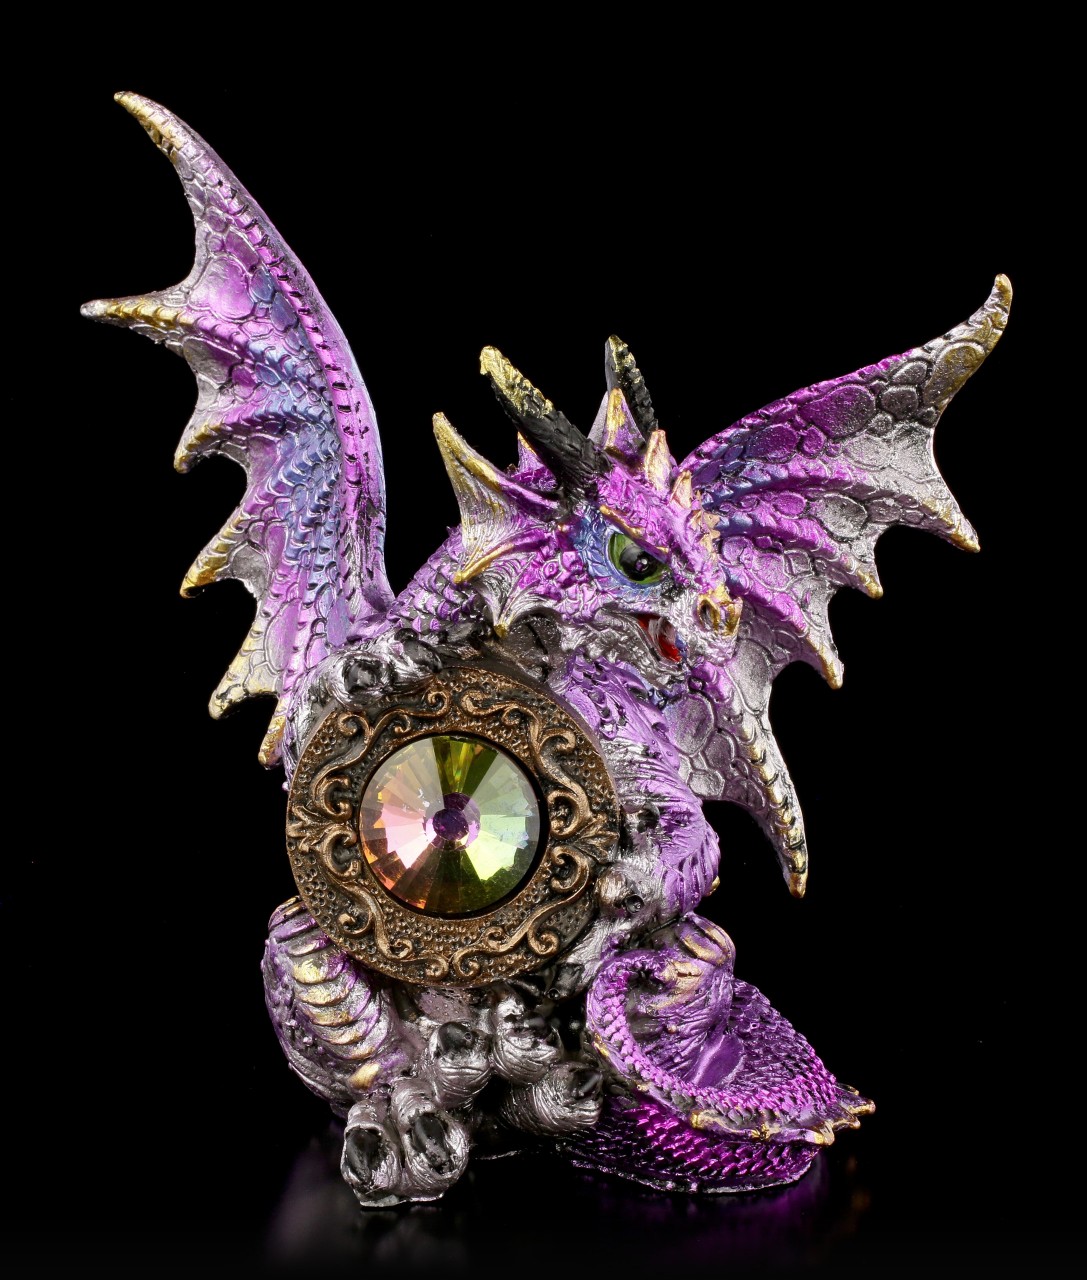 Dragon Figurine - The Dragon's Emerald